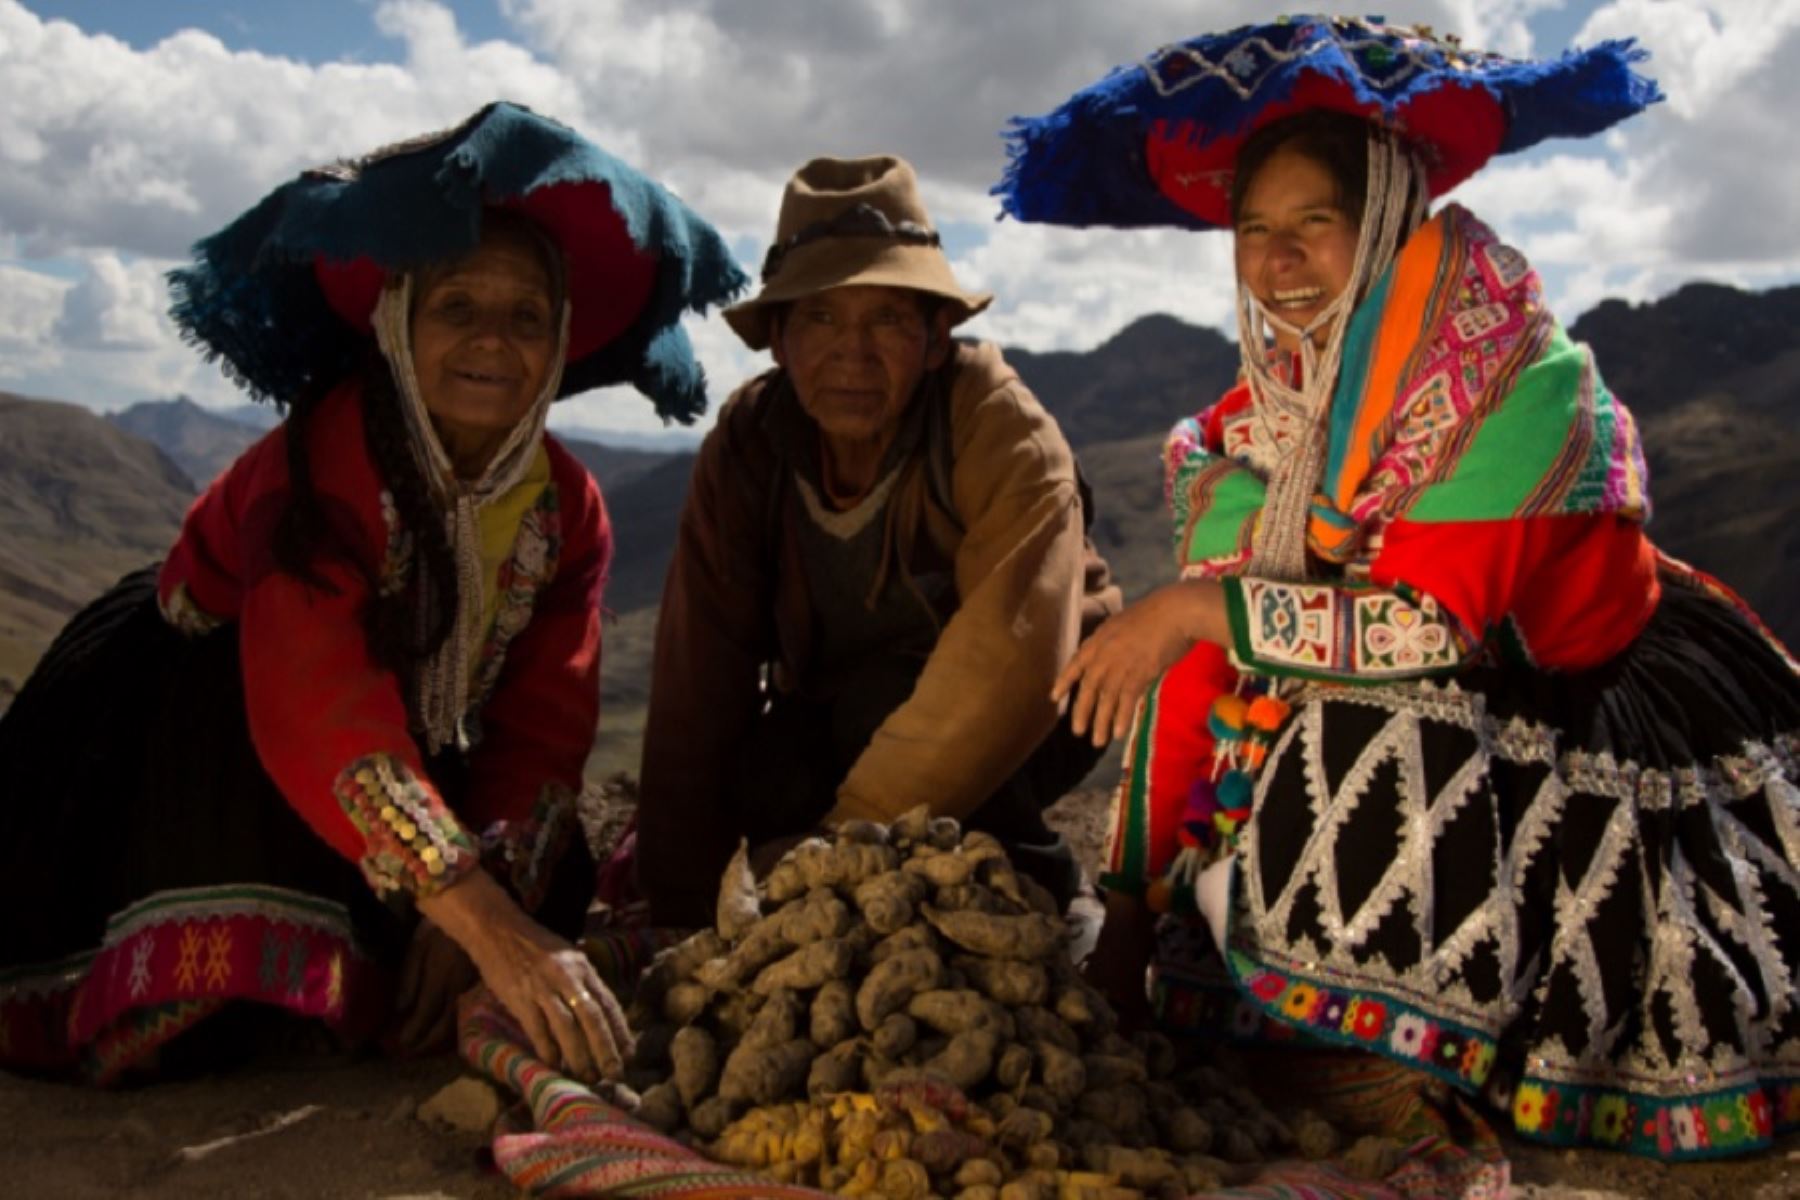 En los alrededores de la montaña Vinicunca, conocida como la montaña Arco Iris, a 3,800 metros sobre el nivel del mar en la región Cusco, una comunidad ha recuperado del olvido cinco variedades de mashua, un superalimento con propiedades nutritivas y medicinales muy valoradas desde tiempos ancestrales. Foto: Jasmín Ramírez Romero/PNUD Perú